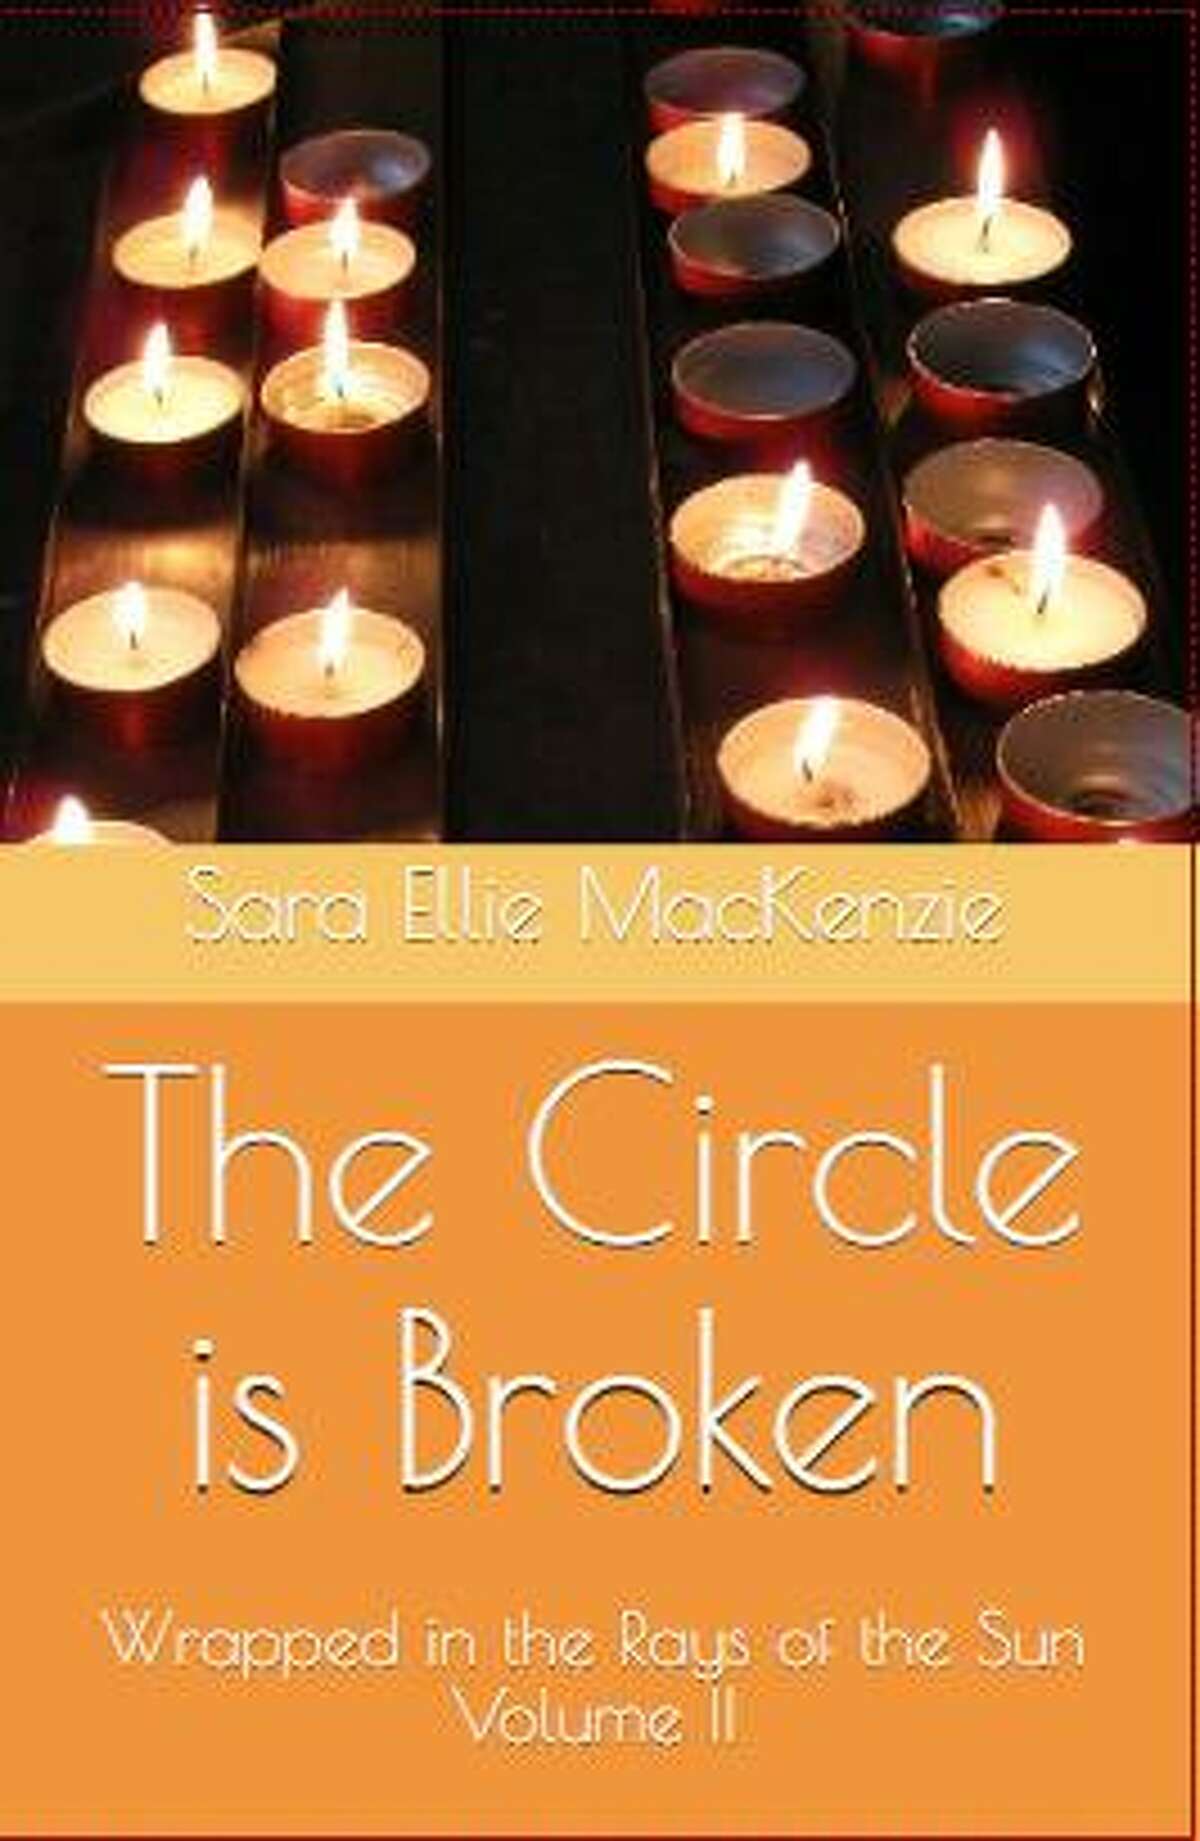 “The Circle is Broken” by Sara Ellie MacKenzie.